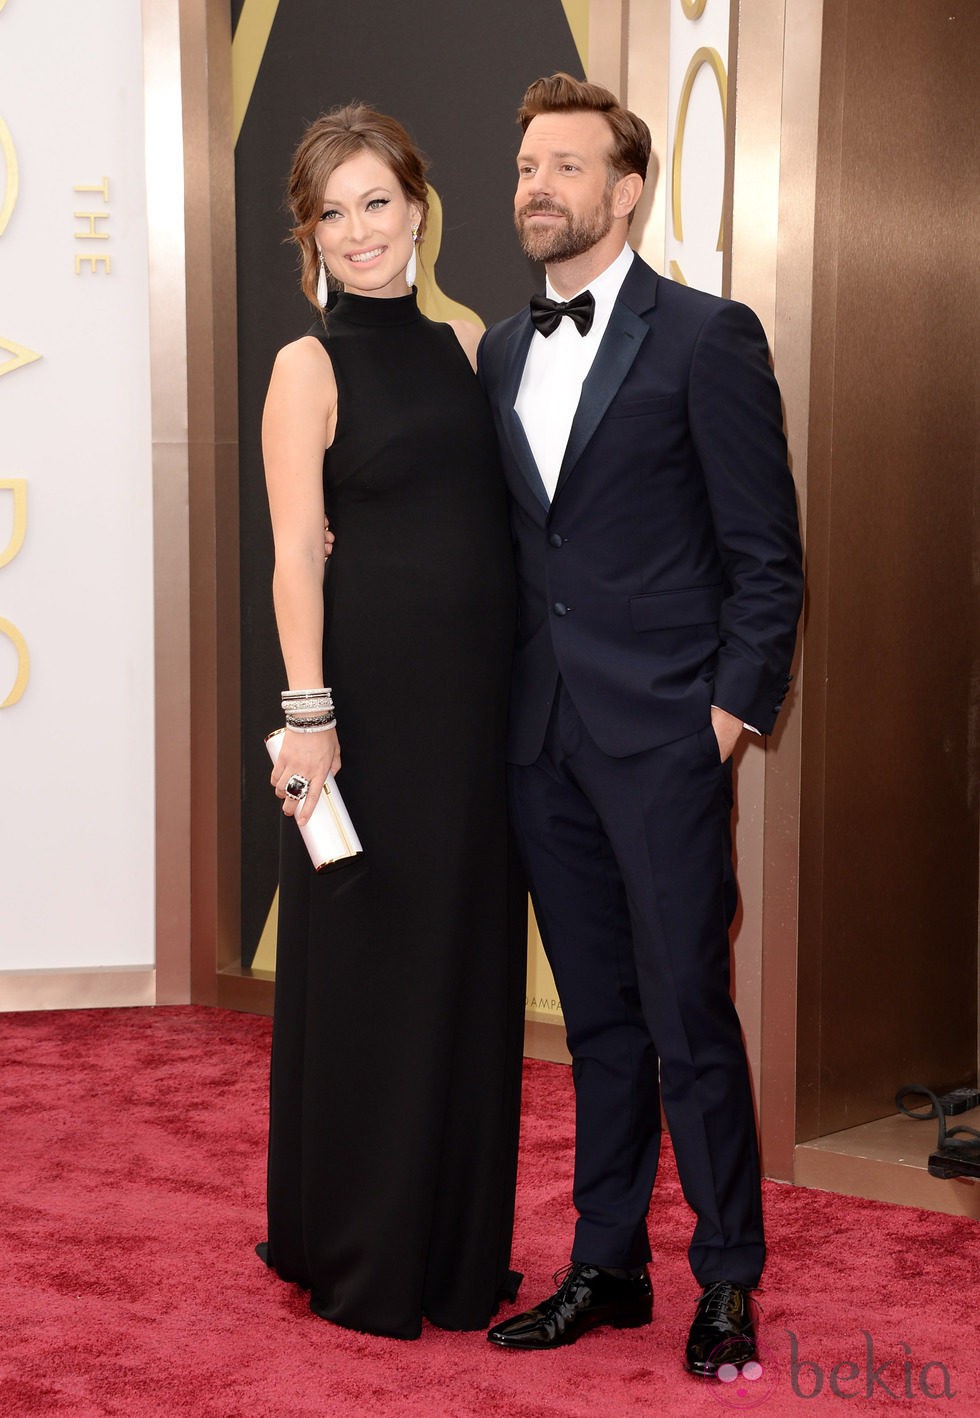 Olivia Wilde y Jason Sudeikis, embarazados en la alfombra roja de los Oscar 2014